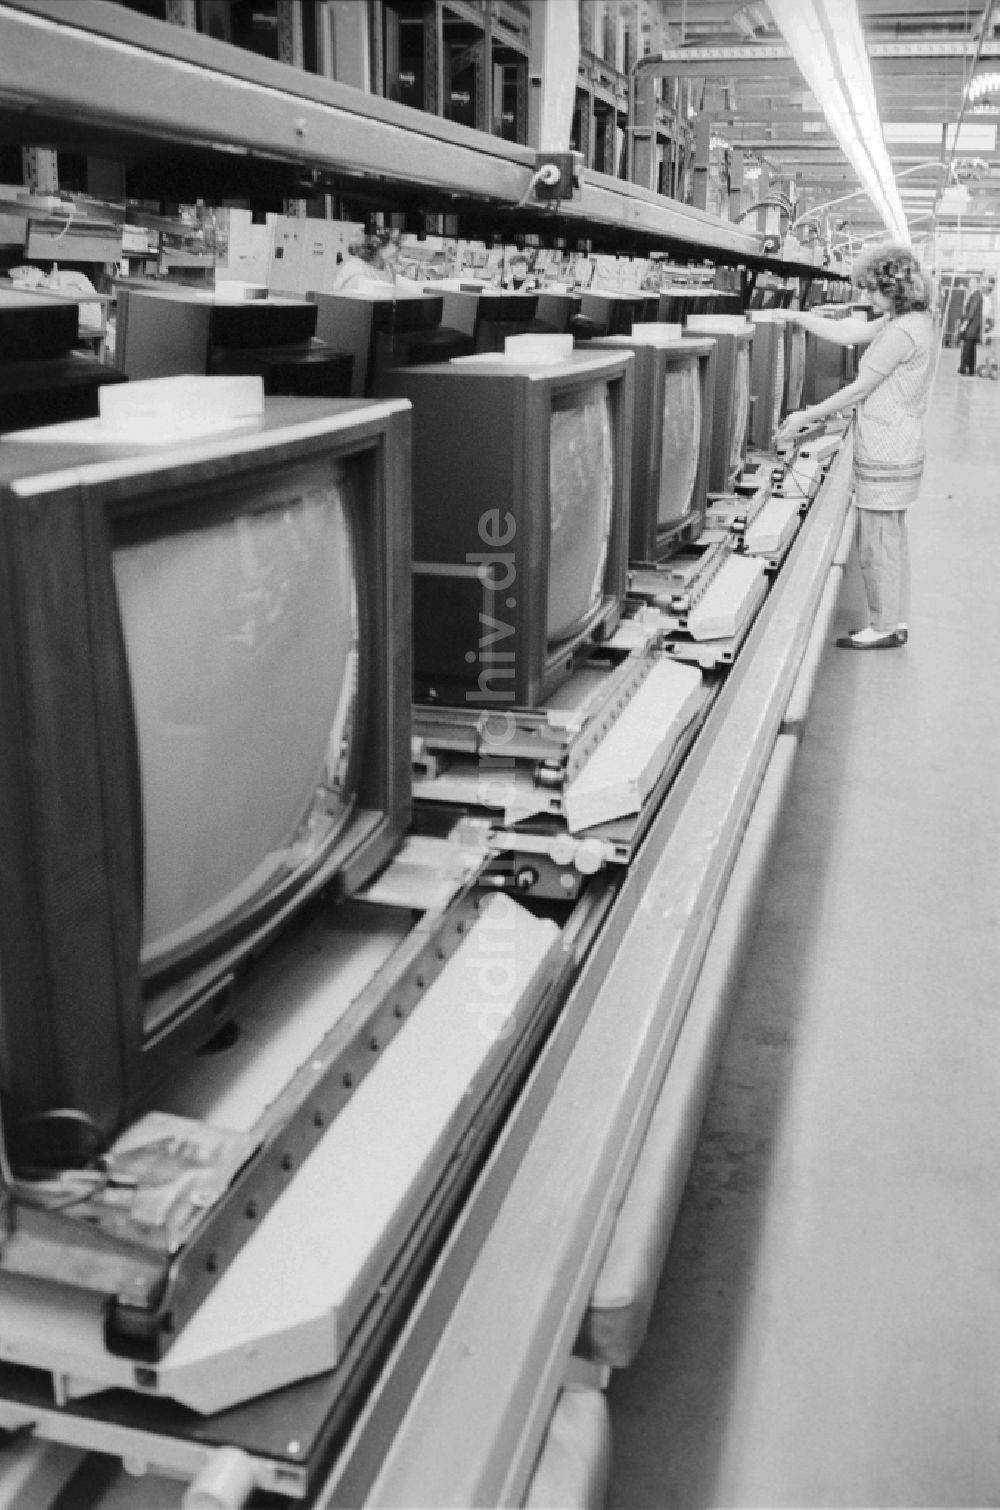 Staßfurt: RFT - Fernsehgeräteproduktion in Staßfurt im Bundesland Sachsen-Anhalt auf dem Gebiet der ehemaligen DDR, Deutsche Demokratische Republik